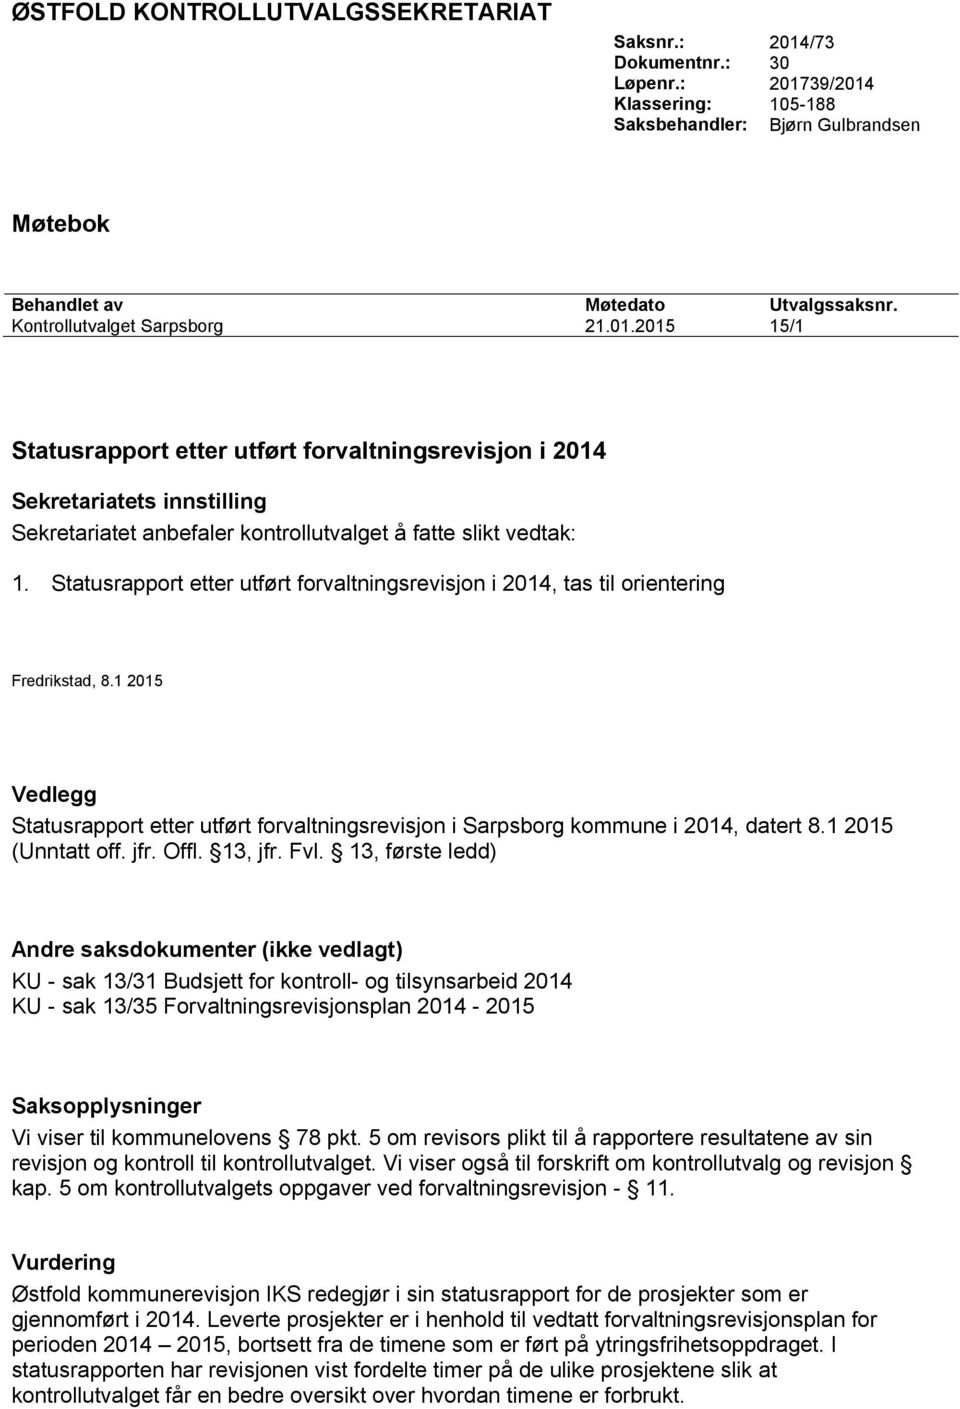 Statusrapport etter utført forvaltningsrevisjon i 2014, tas til orientering Fredrikstad, 8.1 2015 Vedlegg Statusrapport etter utført forvaltningsrevisjon i Sarpsborg kommune i 2014, datert 8.